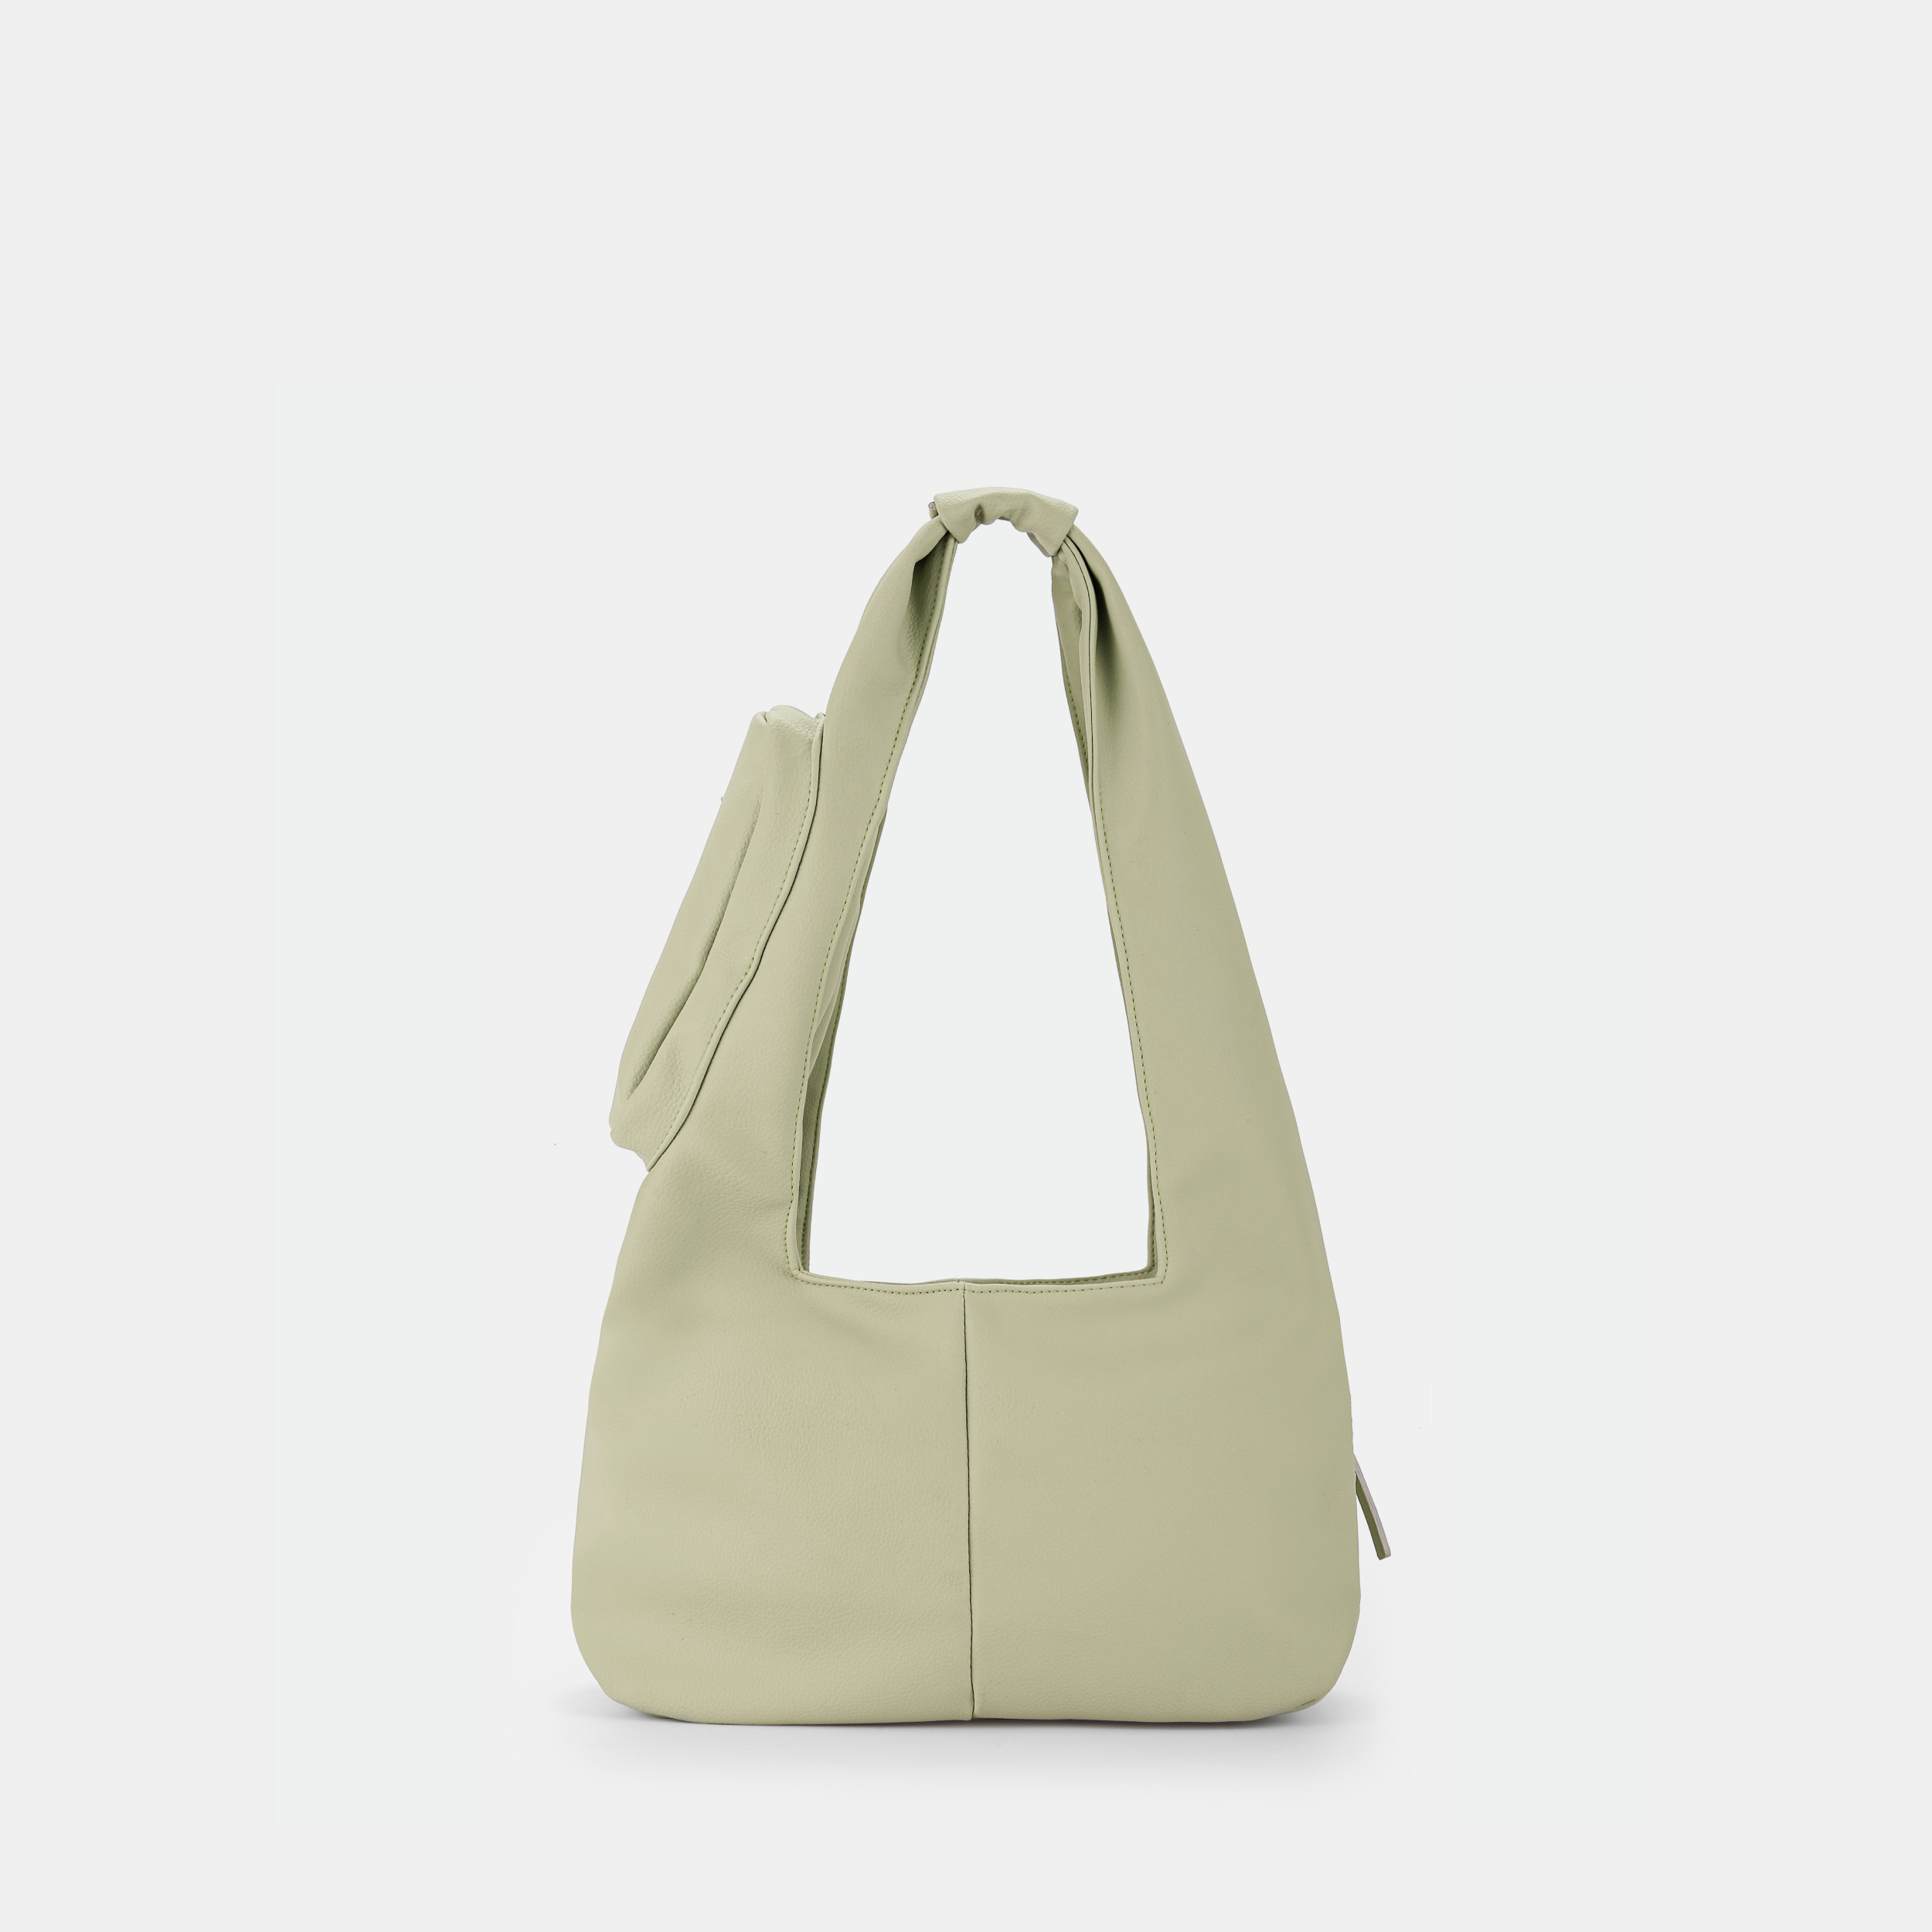 Túi xách Hobo C2-Pocket size Medium (M) màu beige sáng